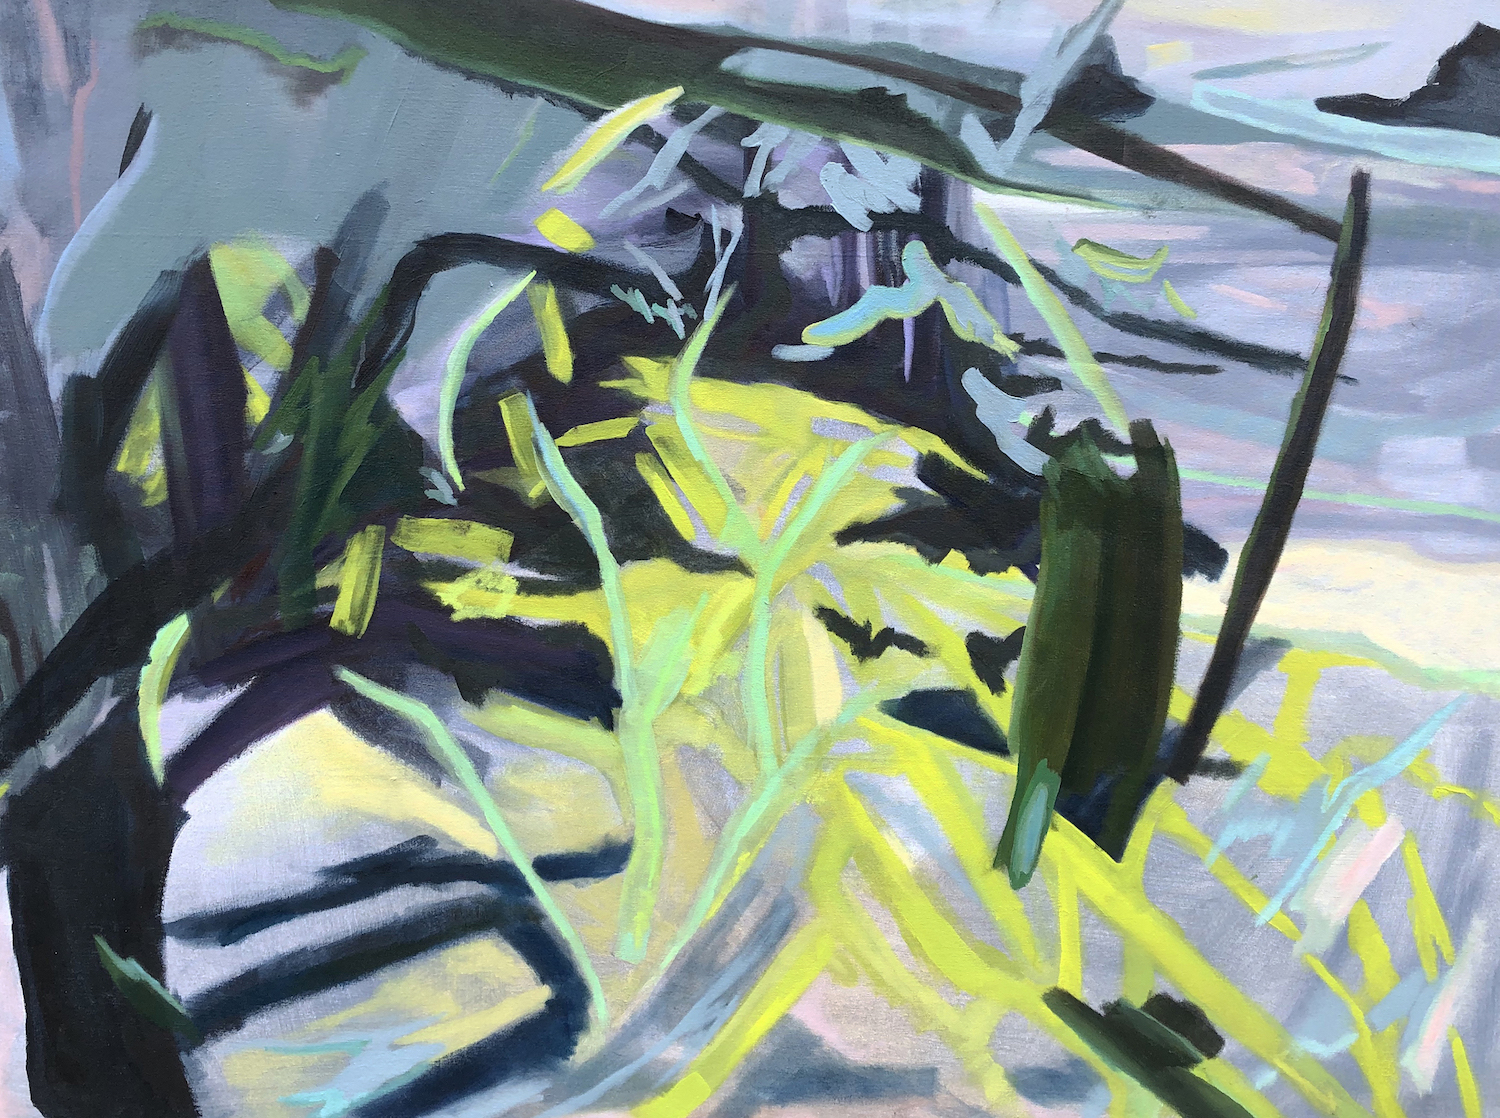 'Ferns', Alyssa Reiser Prince, Oil and acrylic on canvas, 91.4 x 122 cm